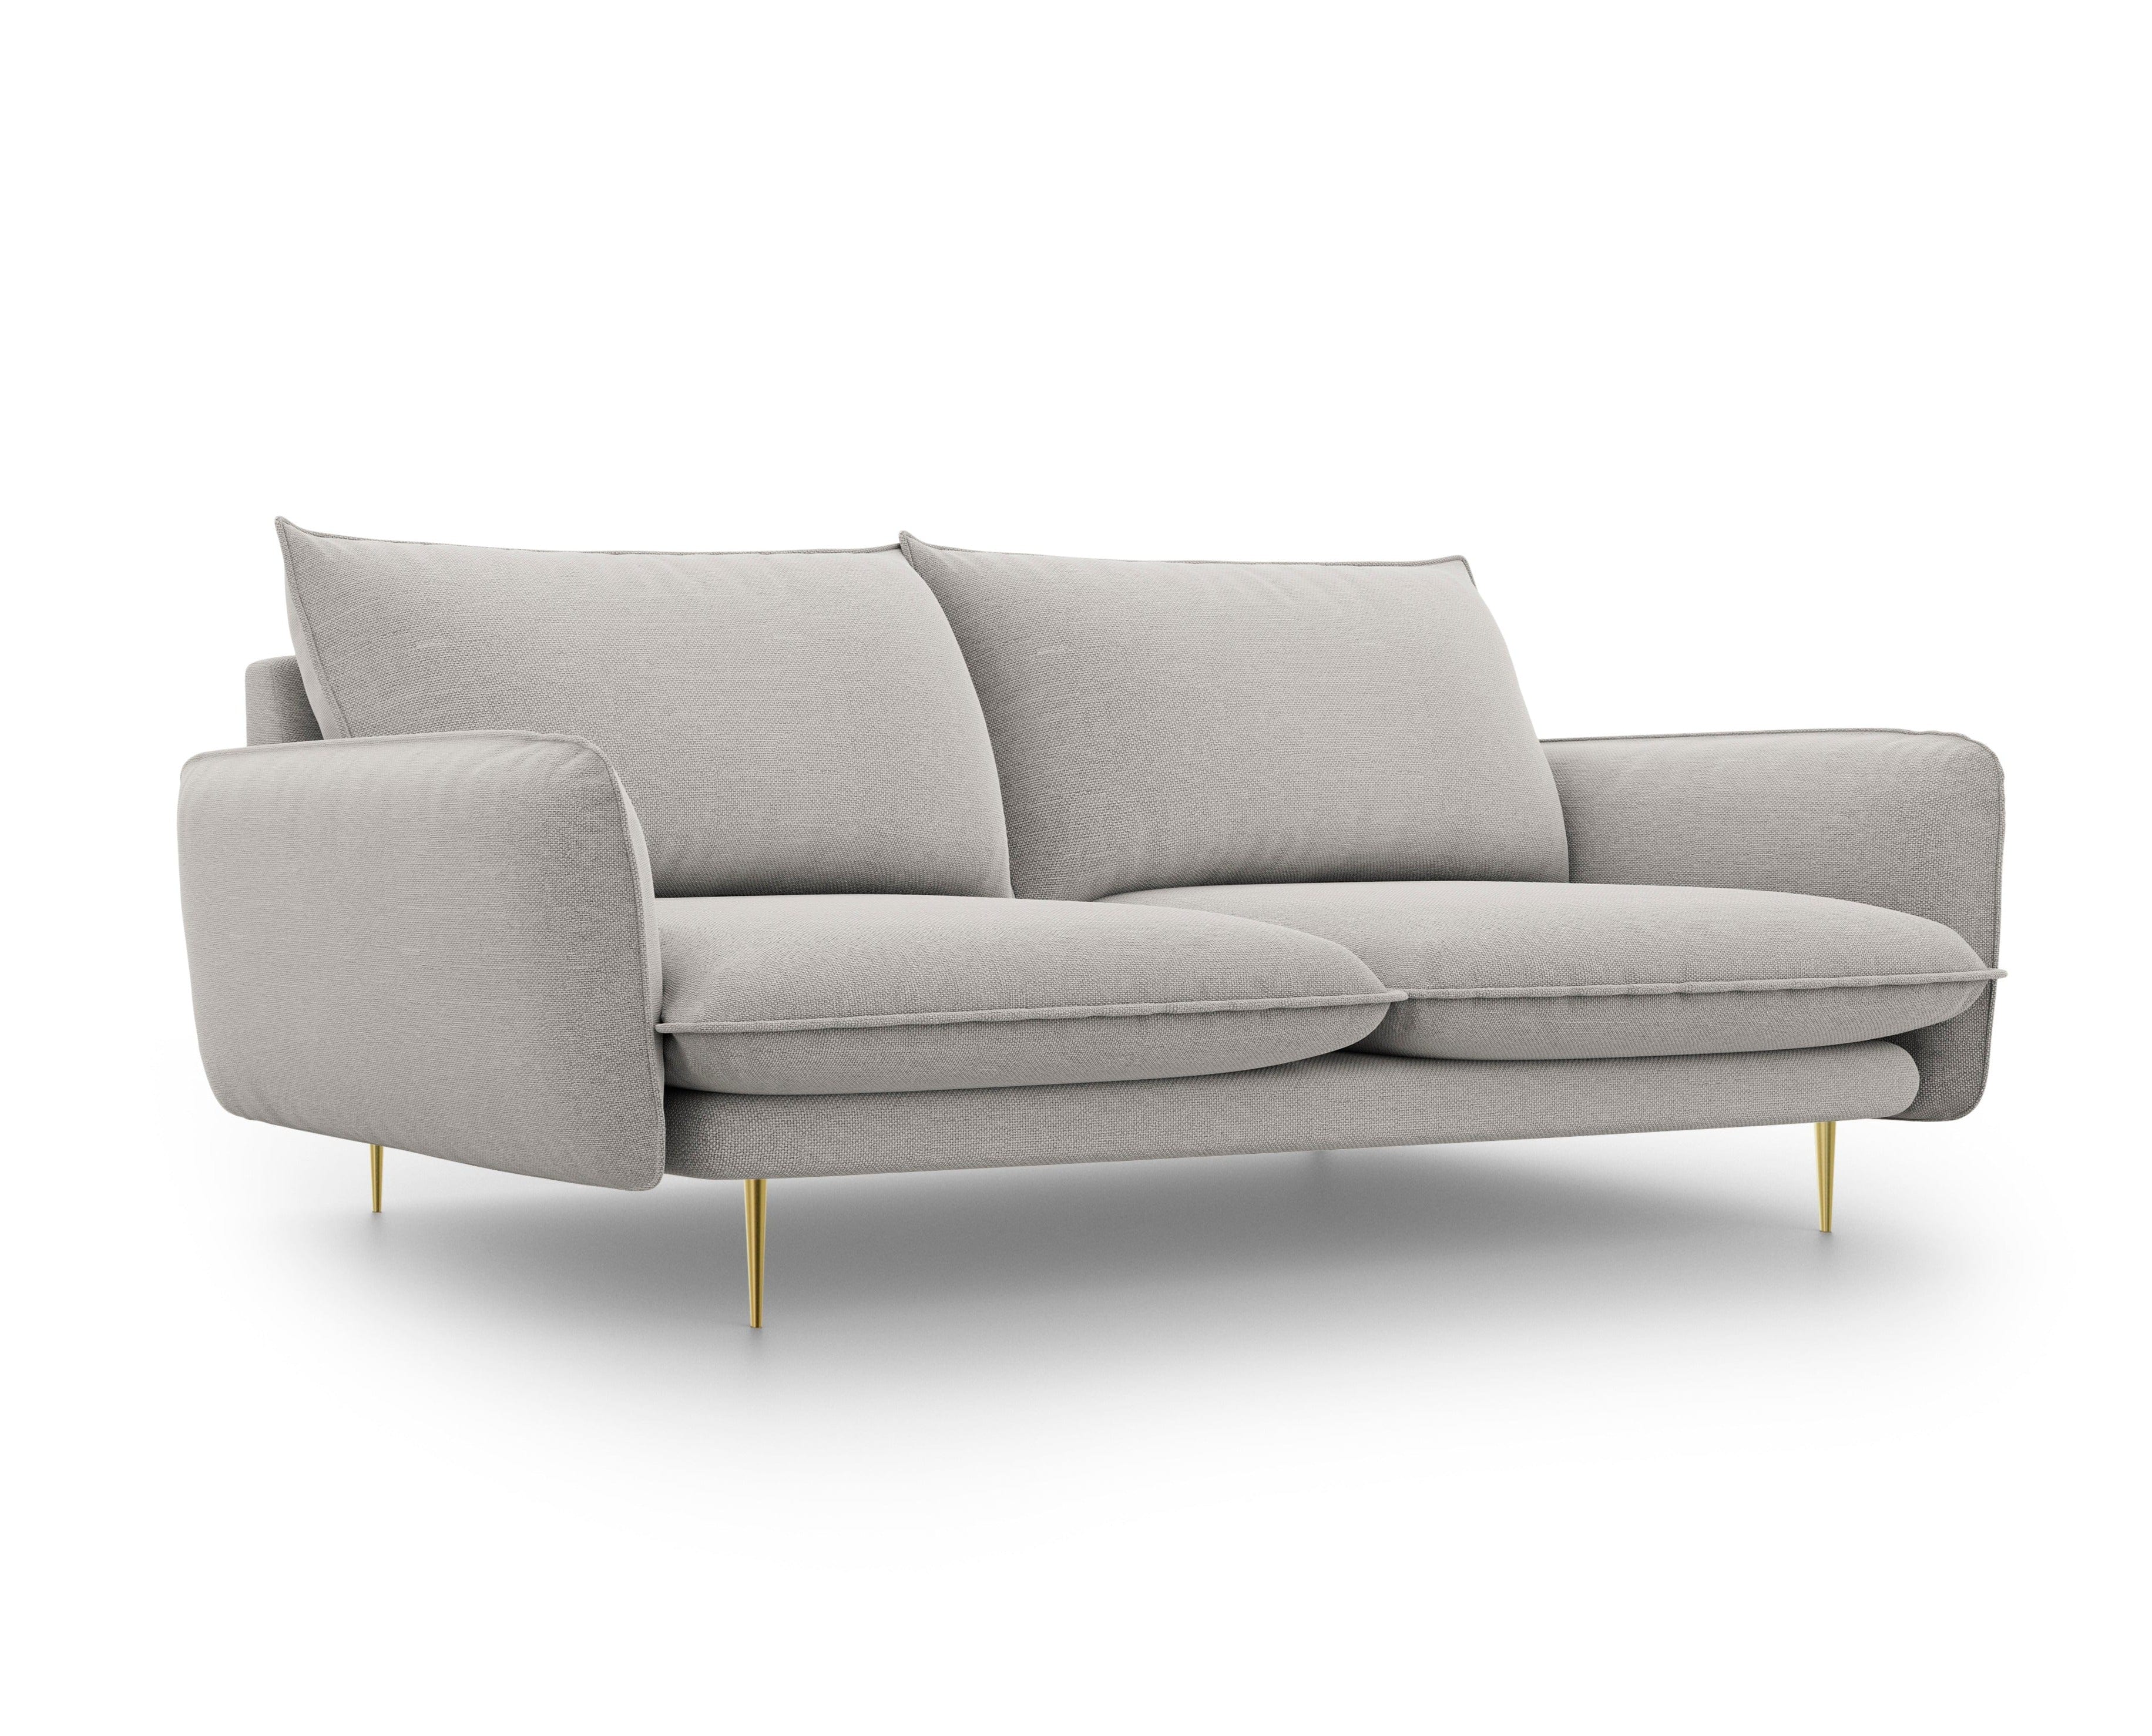 3-Sitzer-Sofa VIENNA hellgrau mit goldenem Untergestell